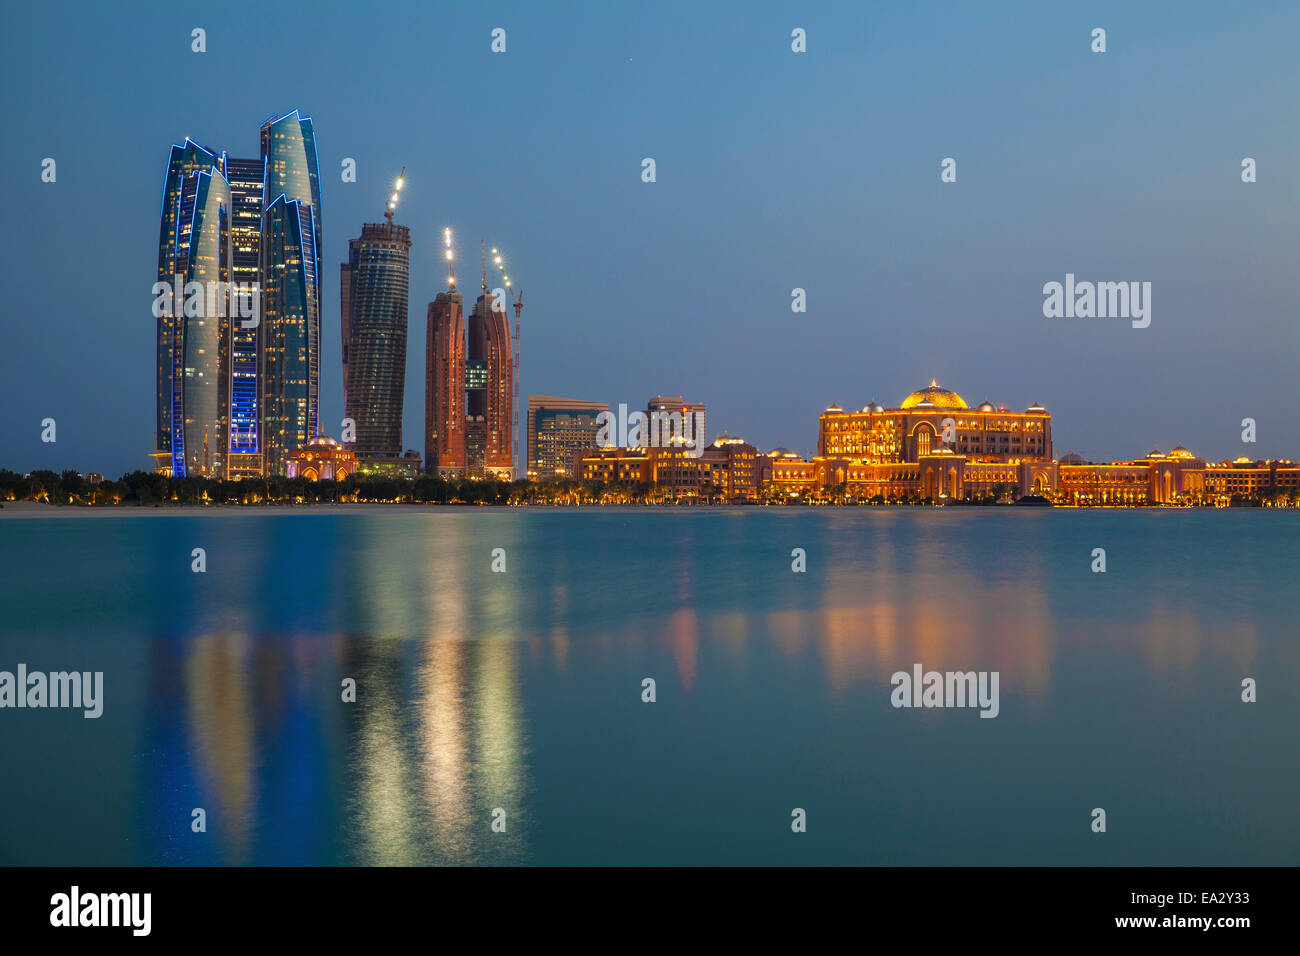 City skyline looking towards the Emirates Palace Hotel and Etihad Towers, Abu Dhabi, United Arab Emirates, Middle East Stock Photo